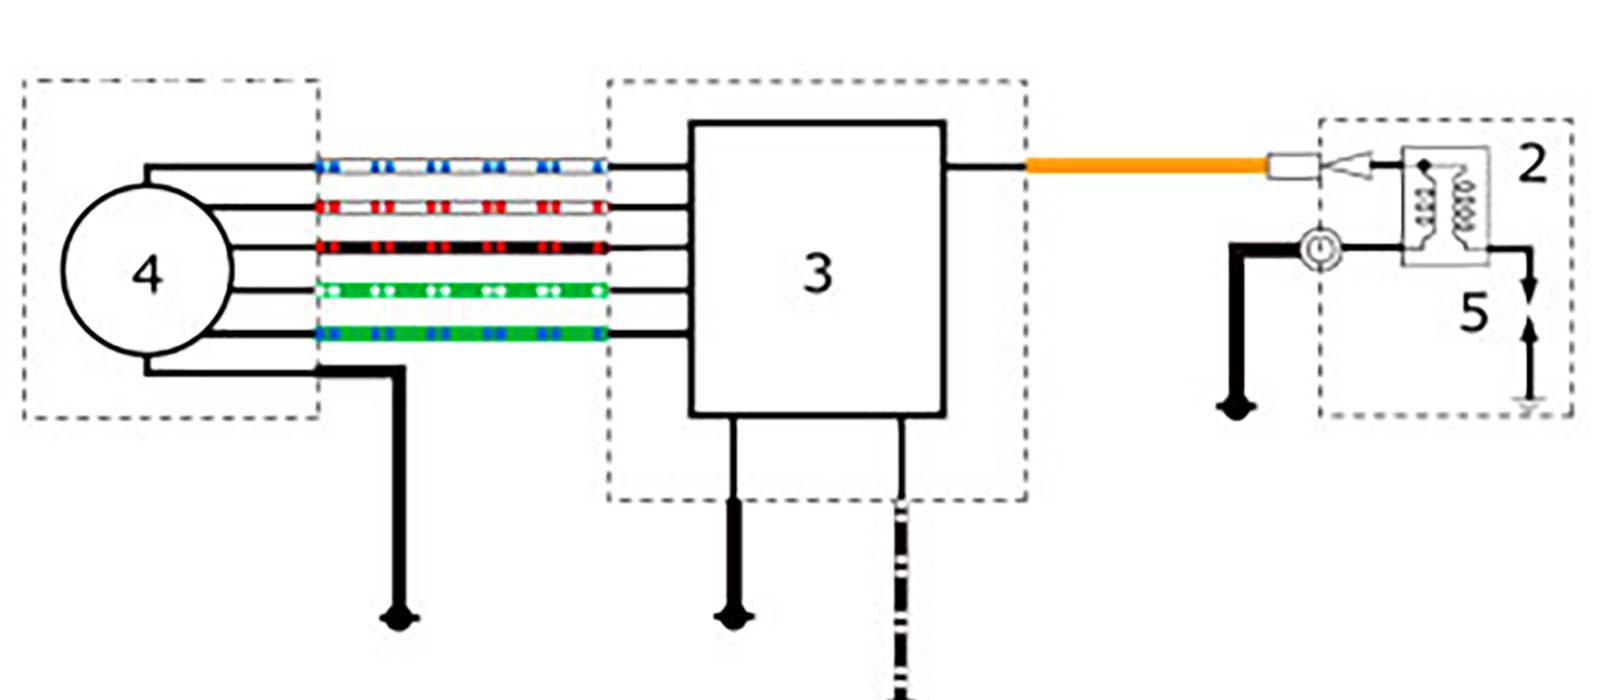 55 Motorcycle Cdi Unit Circuit Diagram - Wiring Diagram Plan